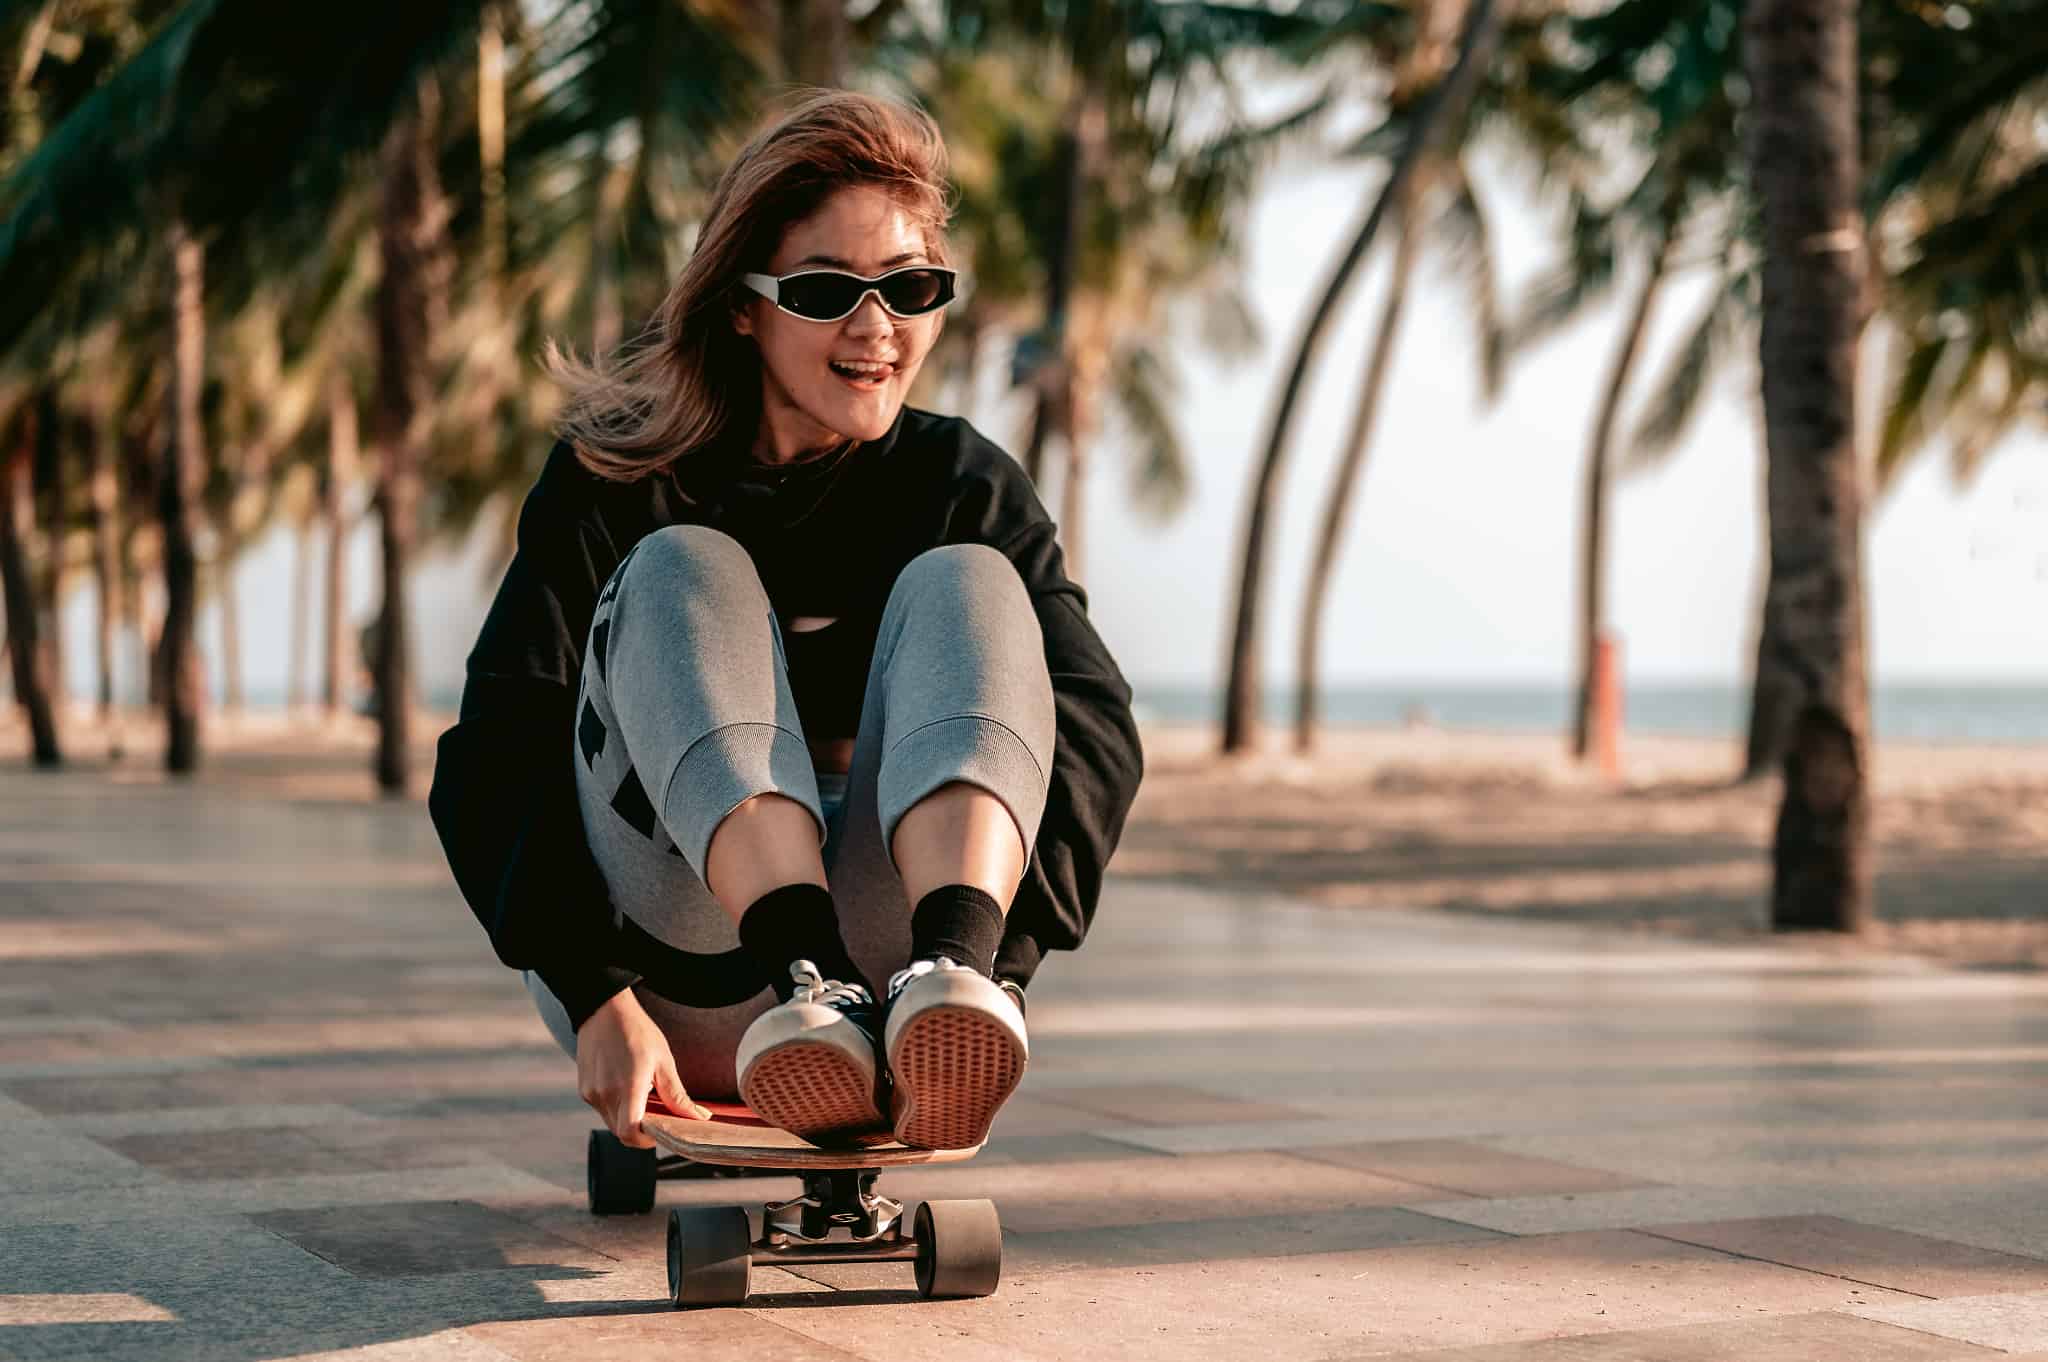 スケートボードにのる女性の写真